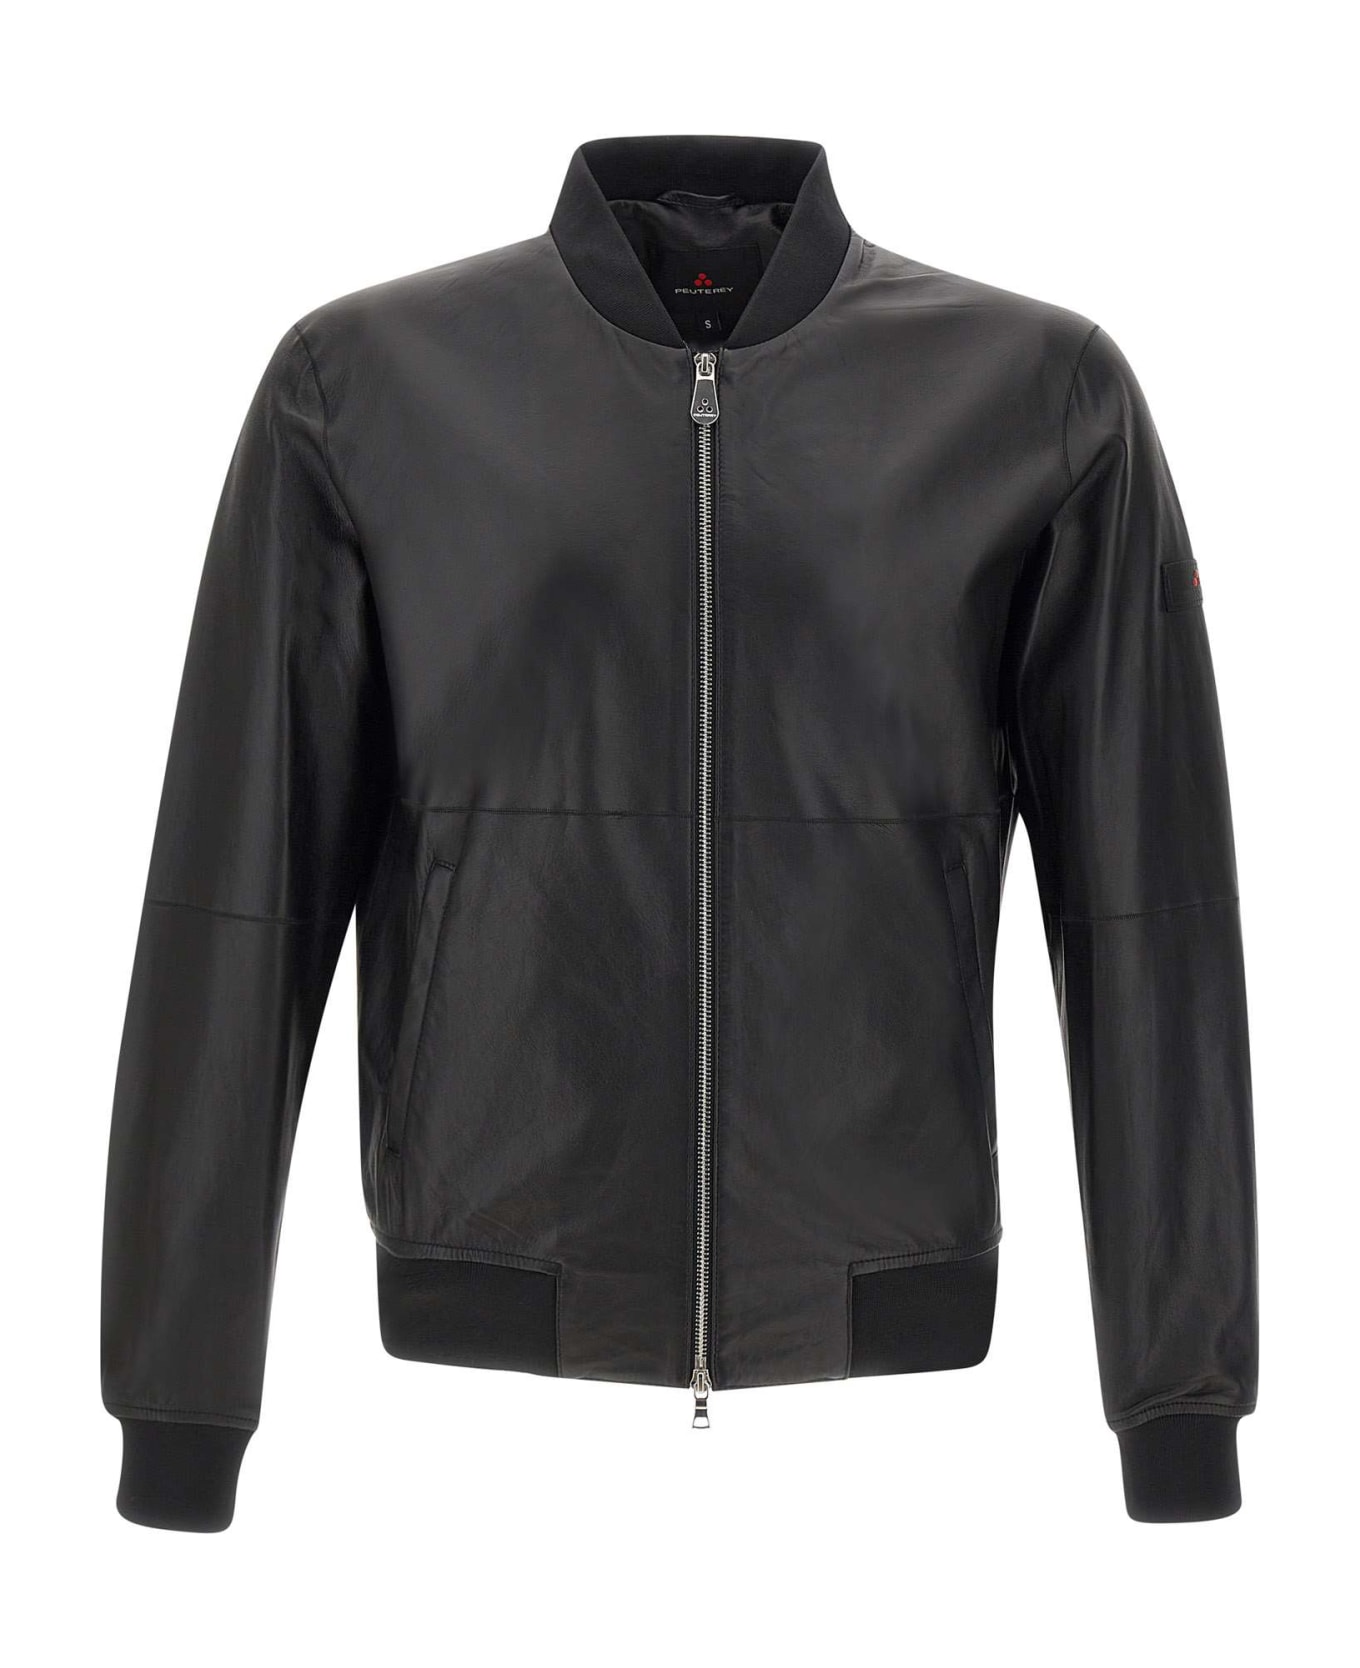 Peuterey "fans Leather Acc" Jacket - BLACK